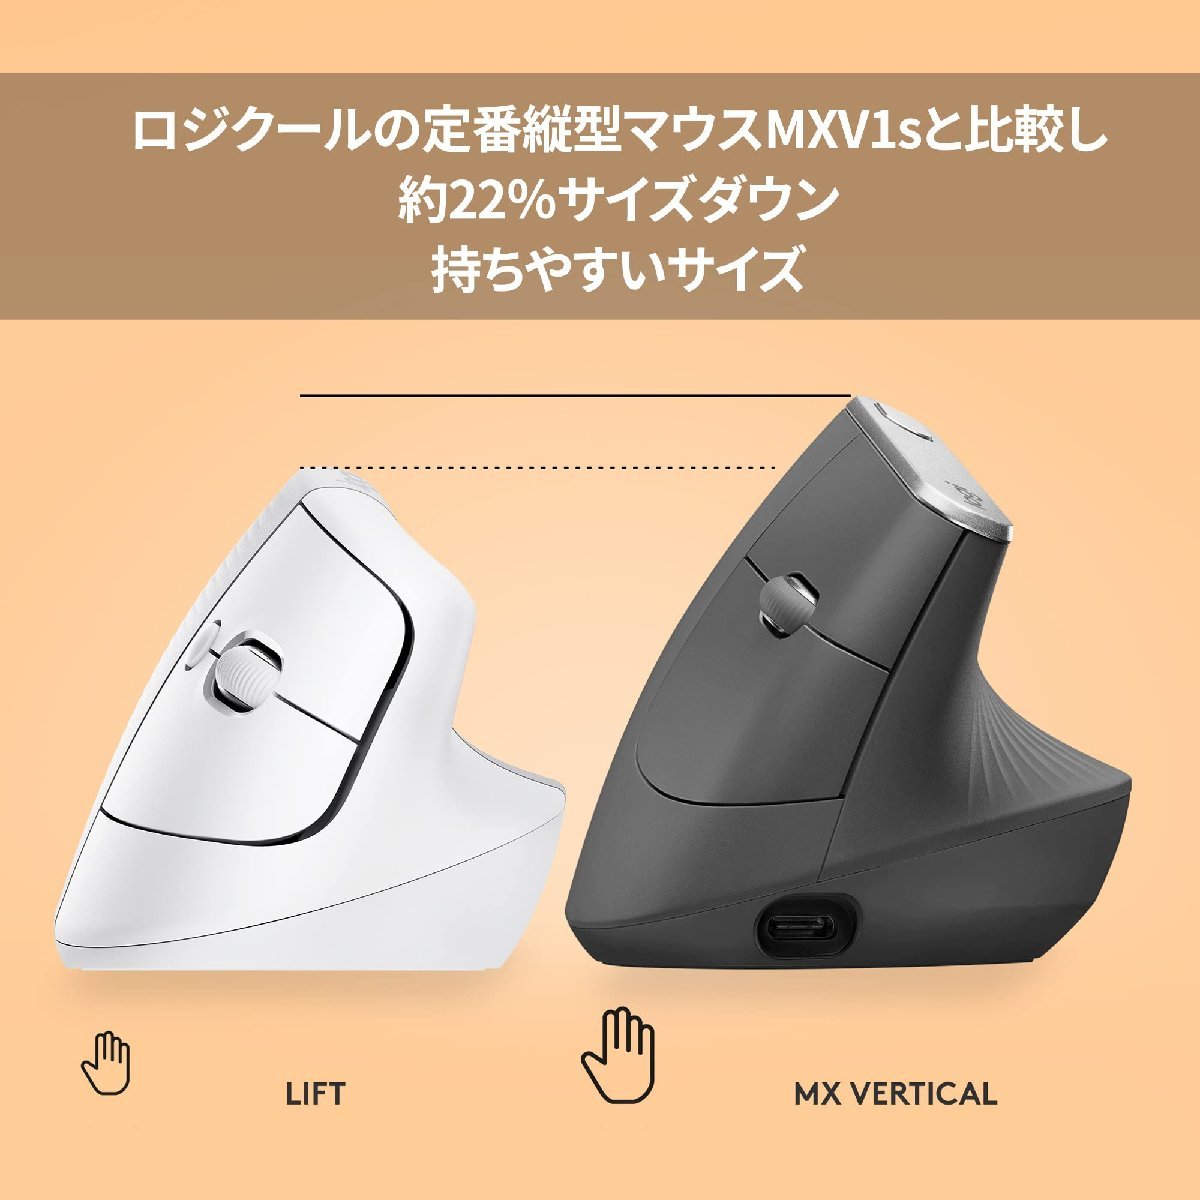 送料無料★Logicool ワイヤレス 縦型 エルゴノミック マウス Bluetooth Unifying非対応(ペイルグレー)_画像6